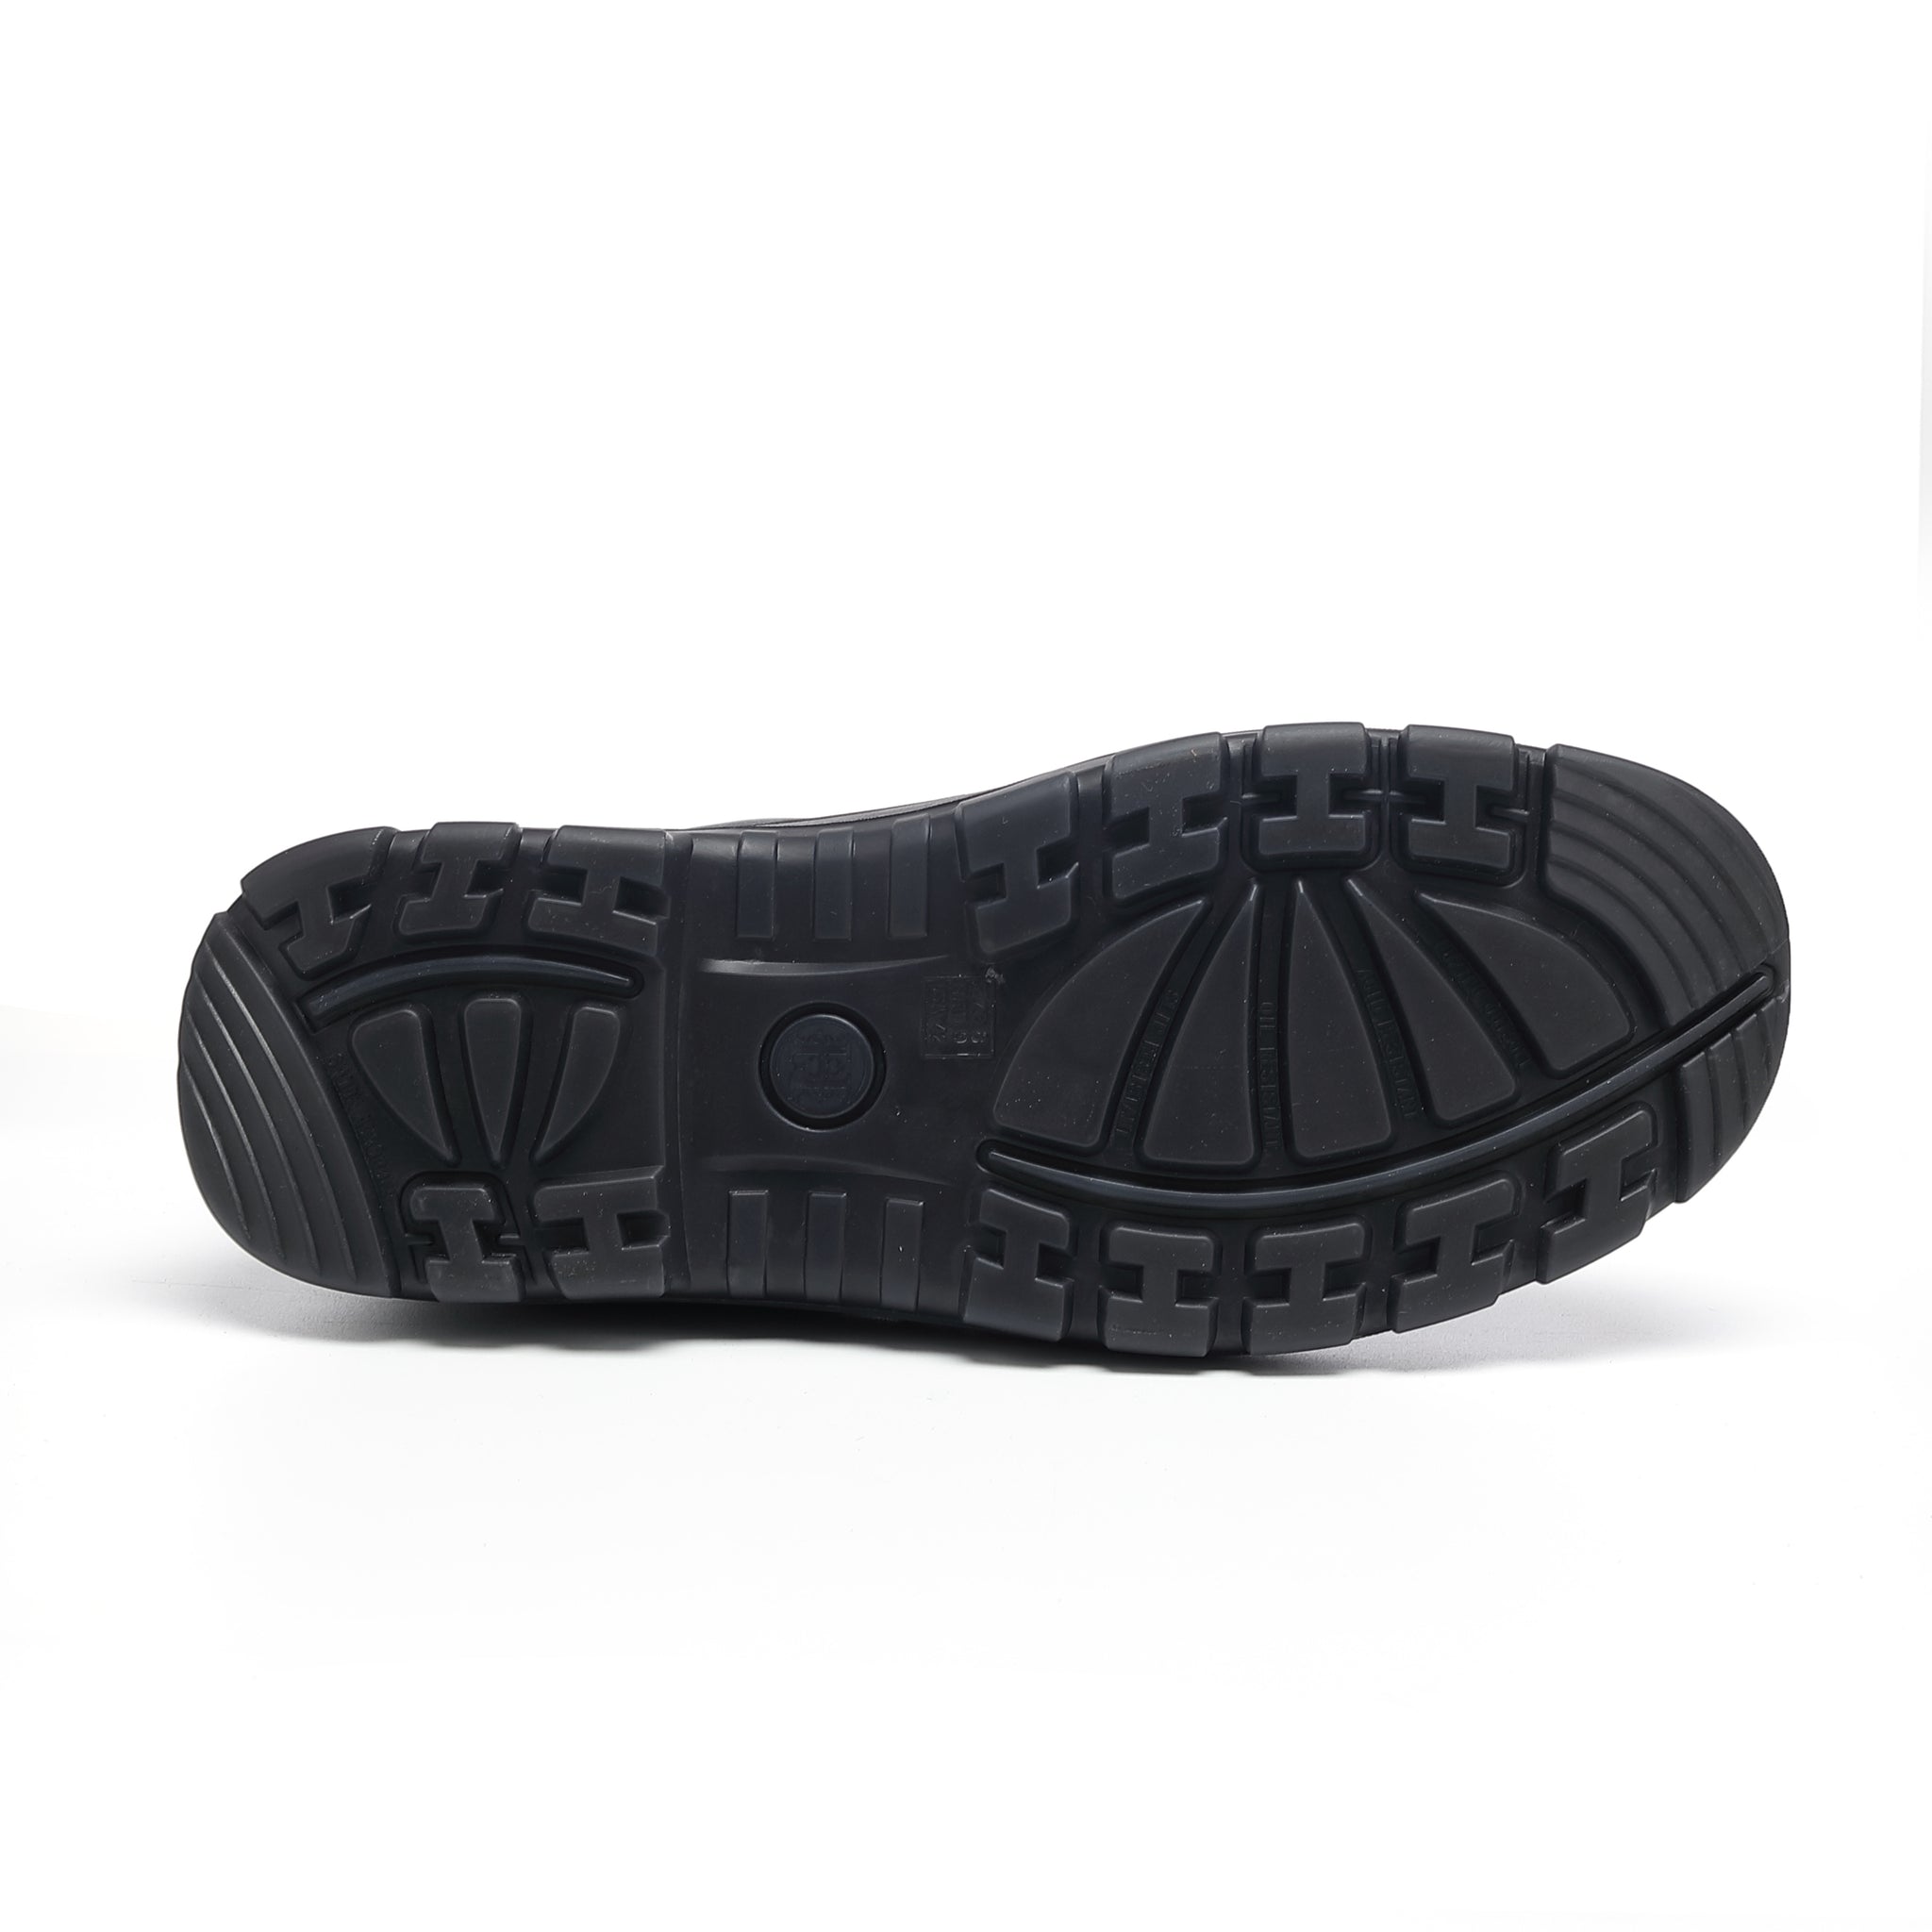 LV 822 Men's Slip-On Work Boots w/ Steel Toe Waterproof Black, D / 7